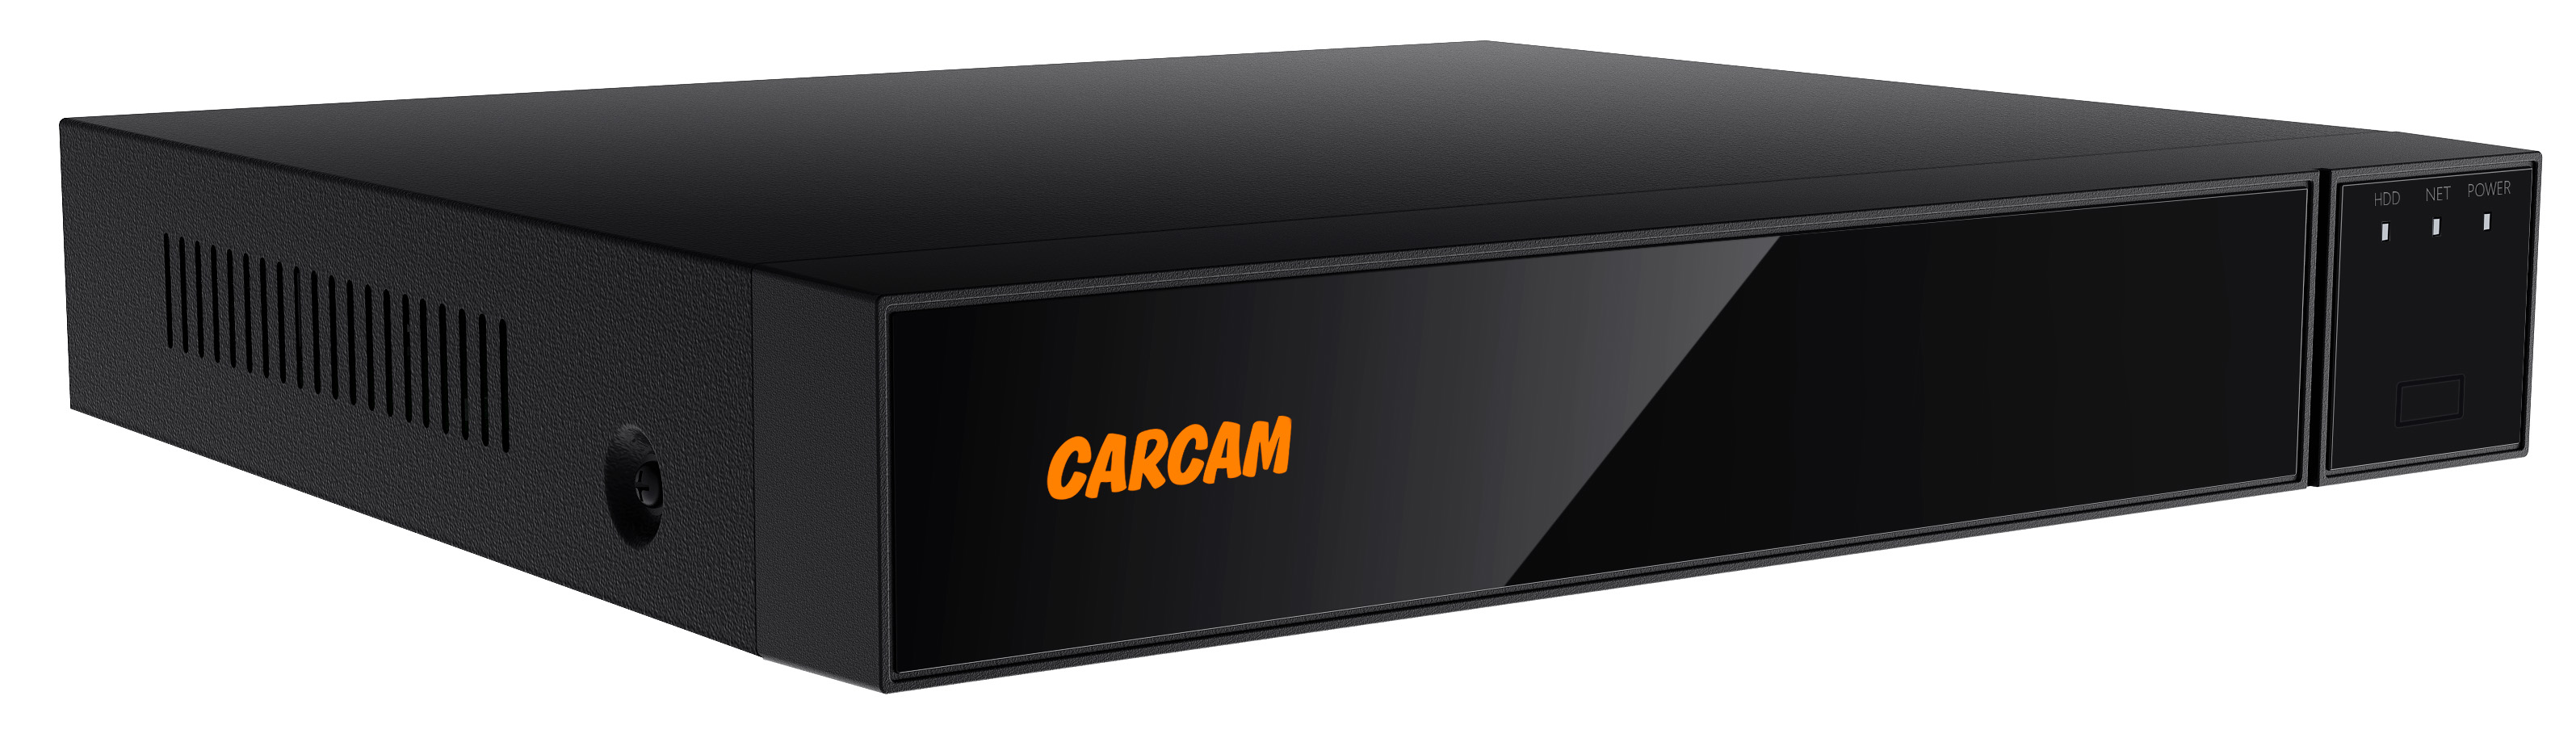 16-канальный гибридный видеорегистратор CARCAM 16CH XVR 8716 8 канальный гибридный видеорегистратор dahua dh xvr5108c i3